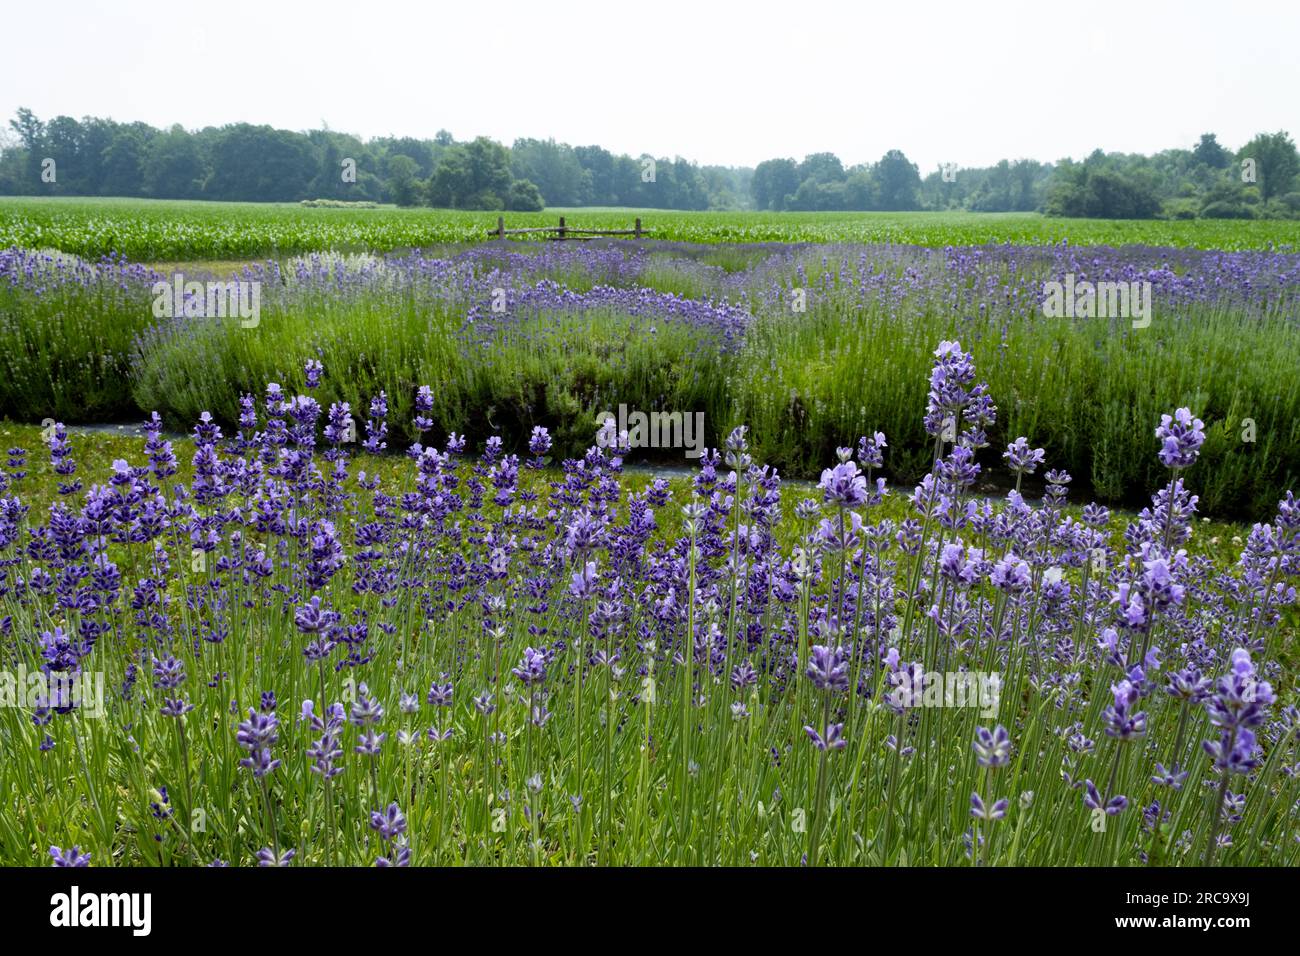 Violette Lavendelpflanzen blühen in einem Dunst vor einem Maisfeld Stockfoto